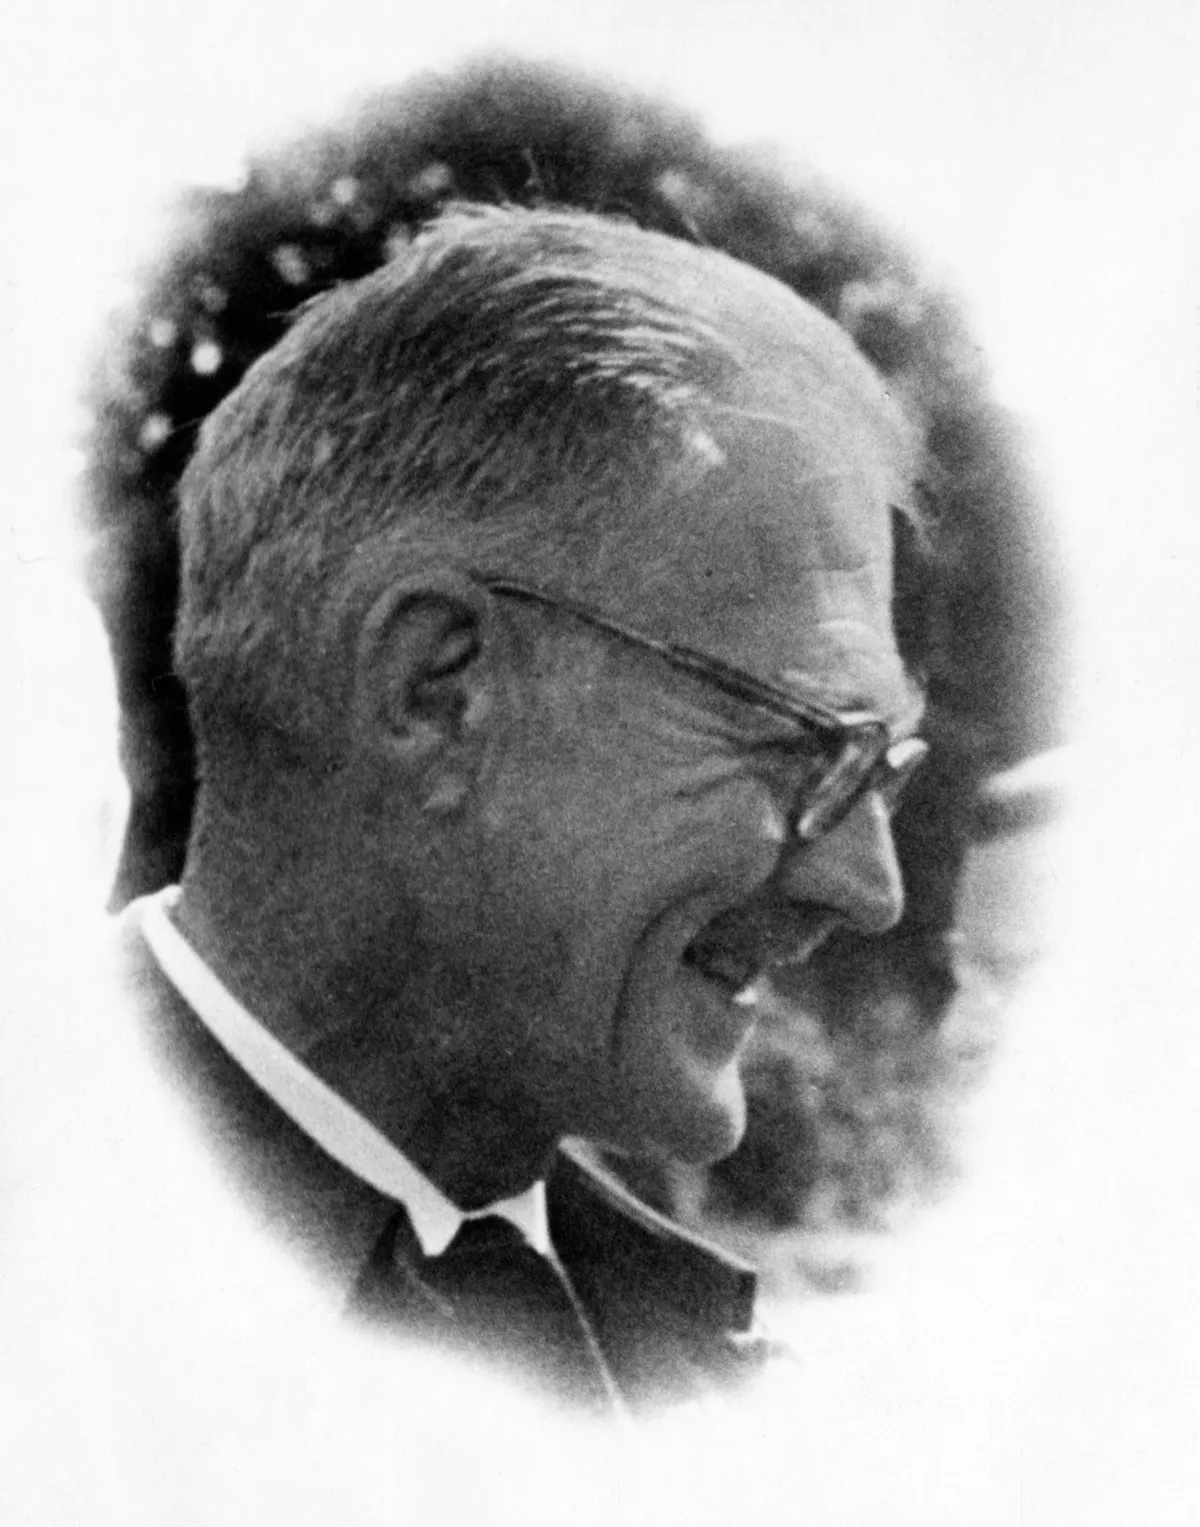 Black and white portrait of Herbert Deignan.